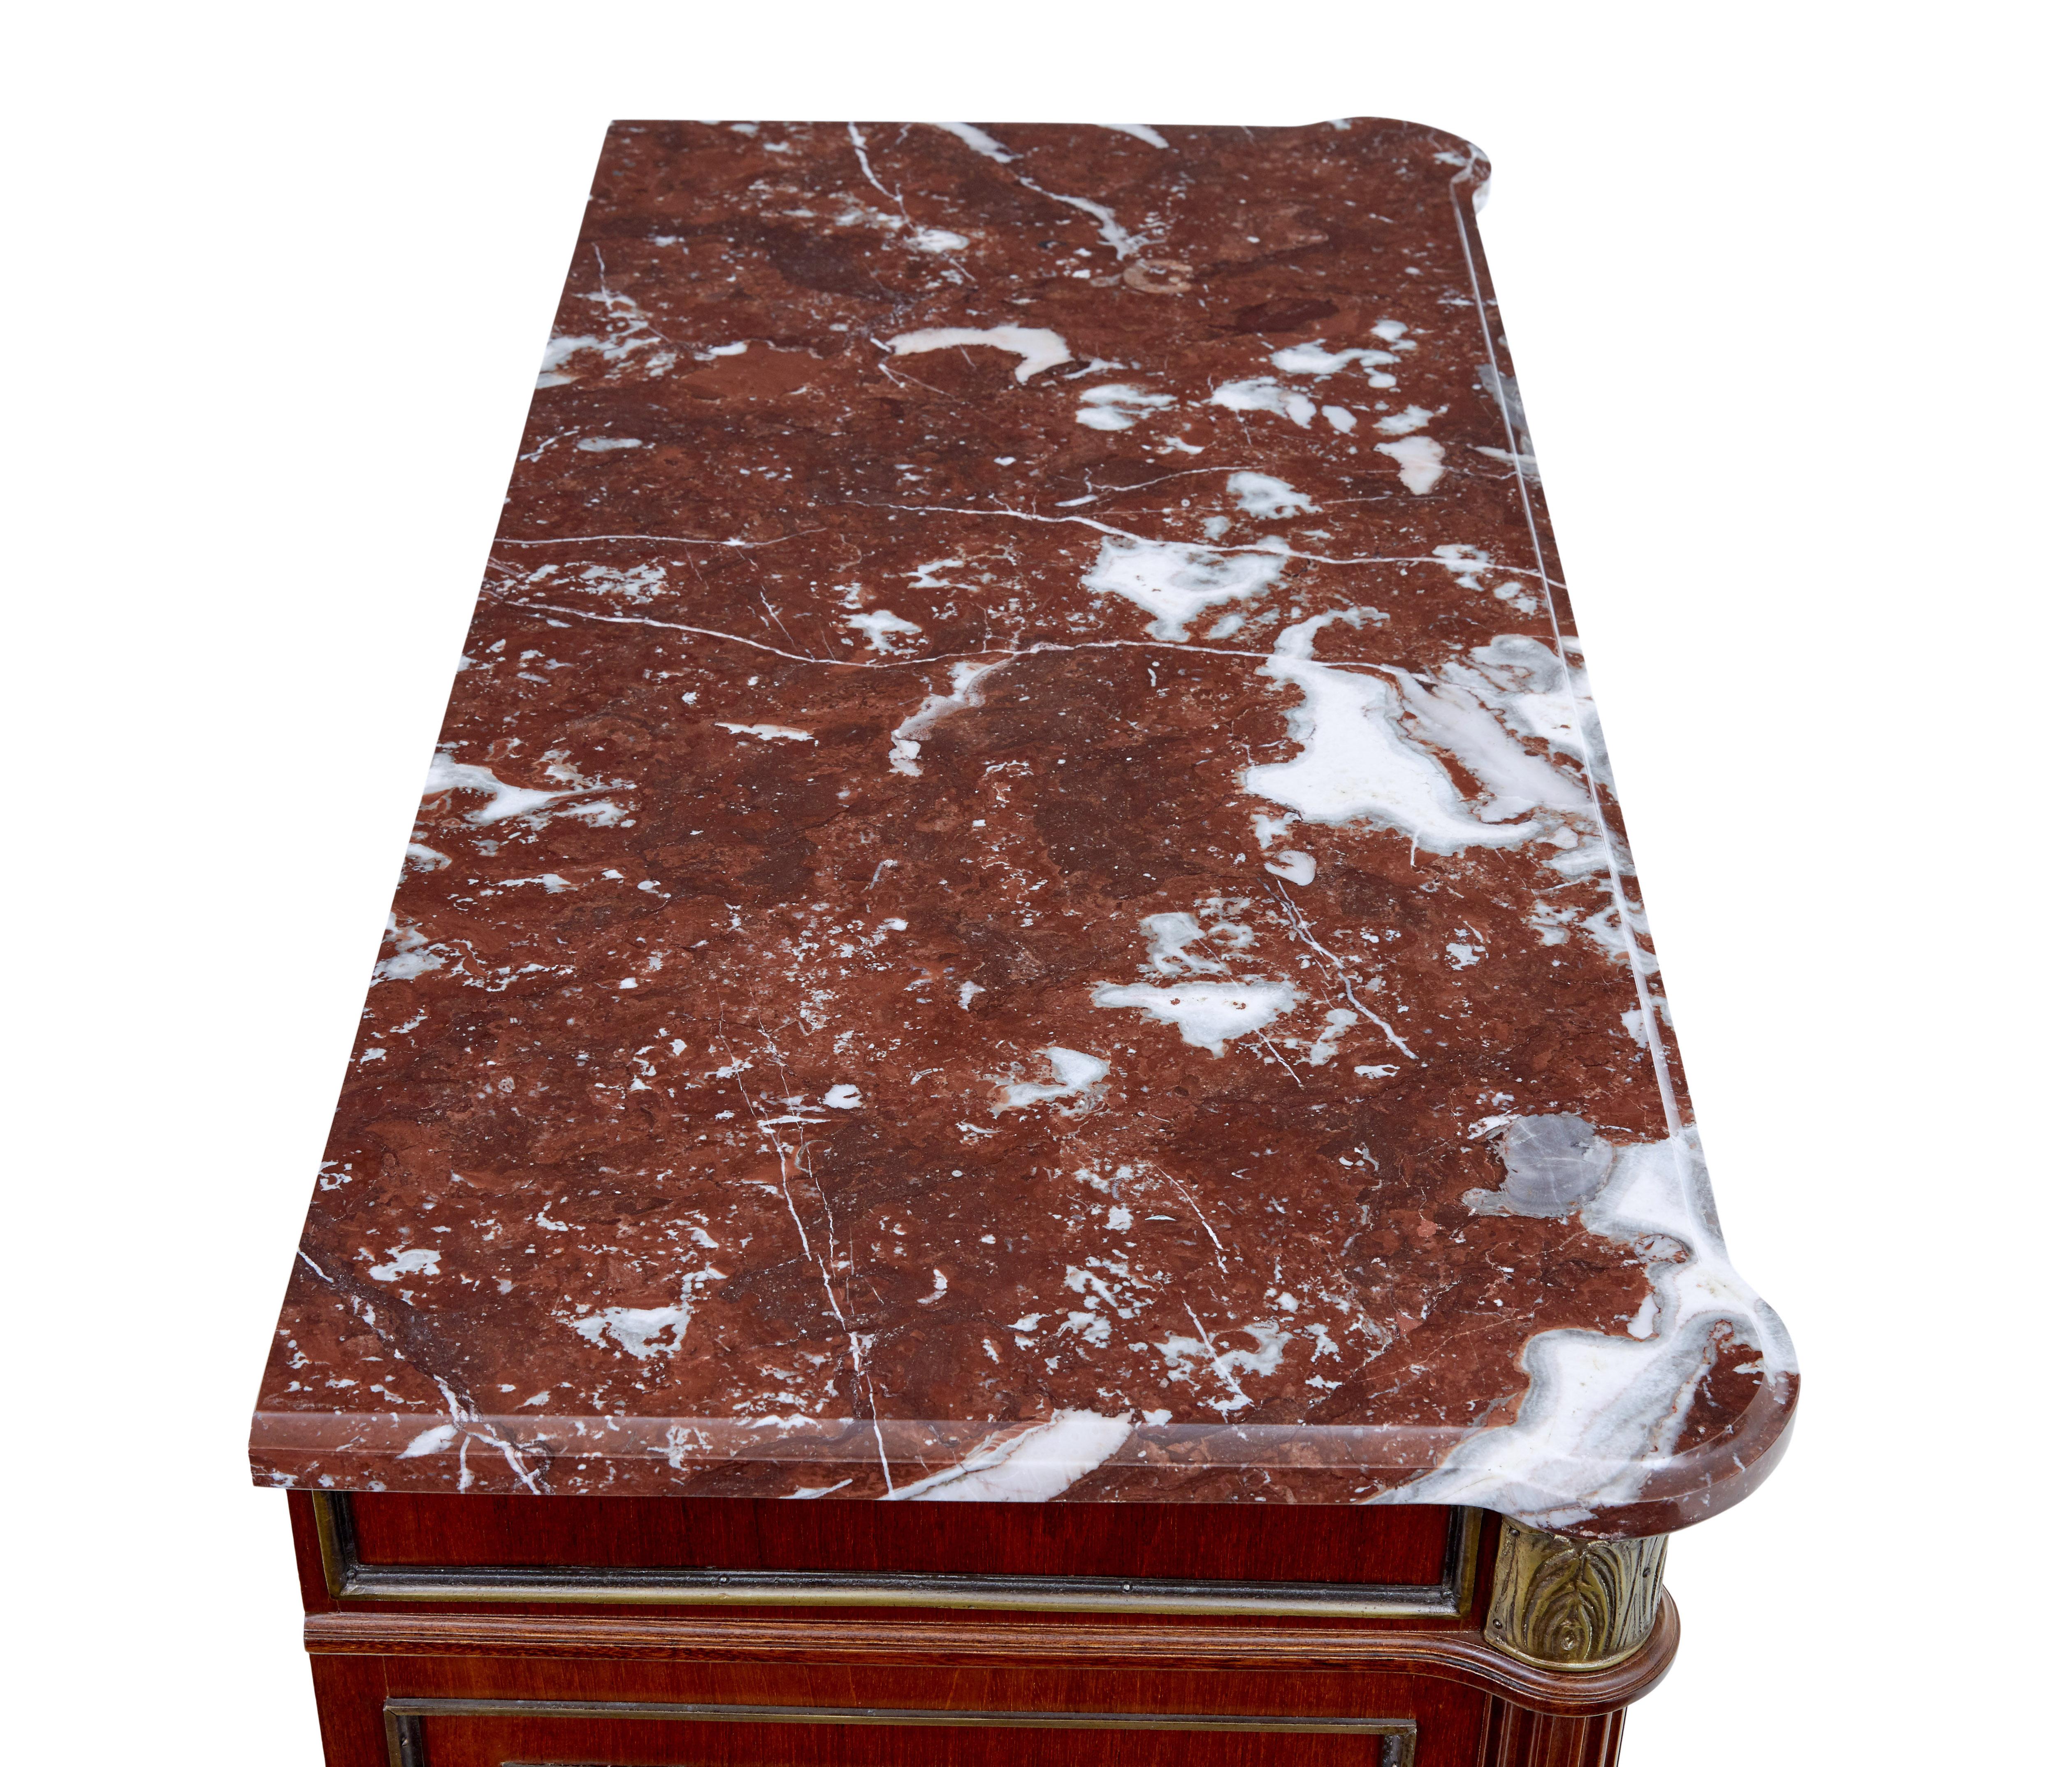 Mahagoni-Kommode aus der Mitte des 20. Jahrhunderts mit Marmorplatte, um 1960.

Kommode von guter Qualität im Rokokogeschmack

Schöne rot-weiße Marmorplatte, die lose montiert ist.  Einzelne Schublade unter der Oberseite mit 2 Ringgriffen,